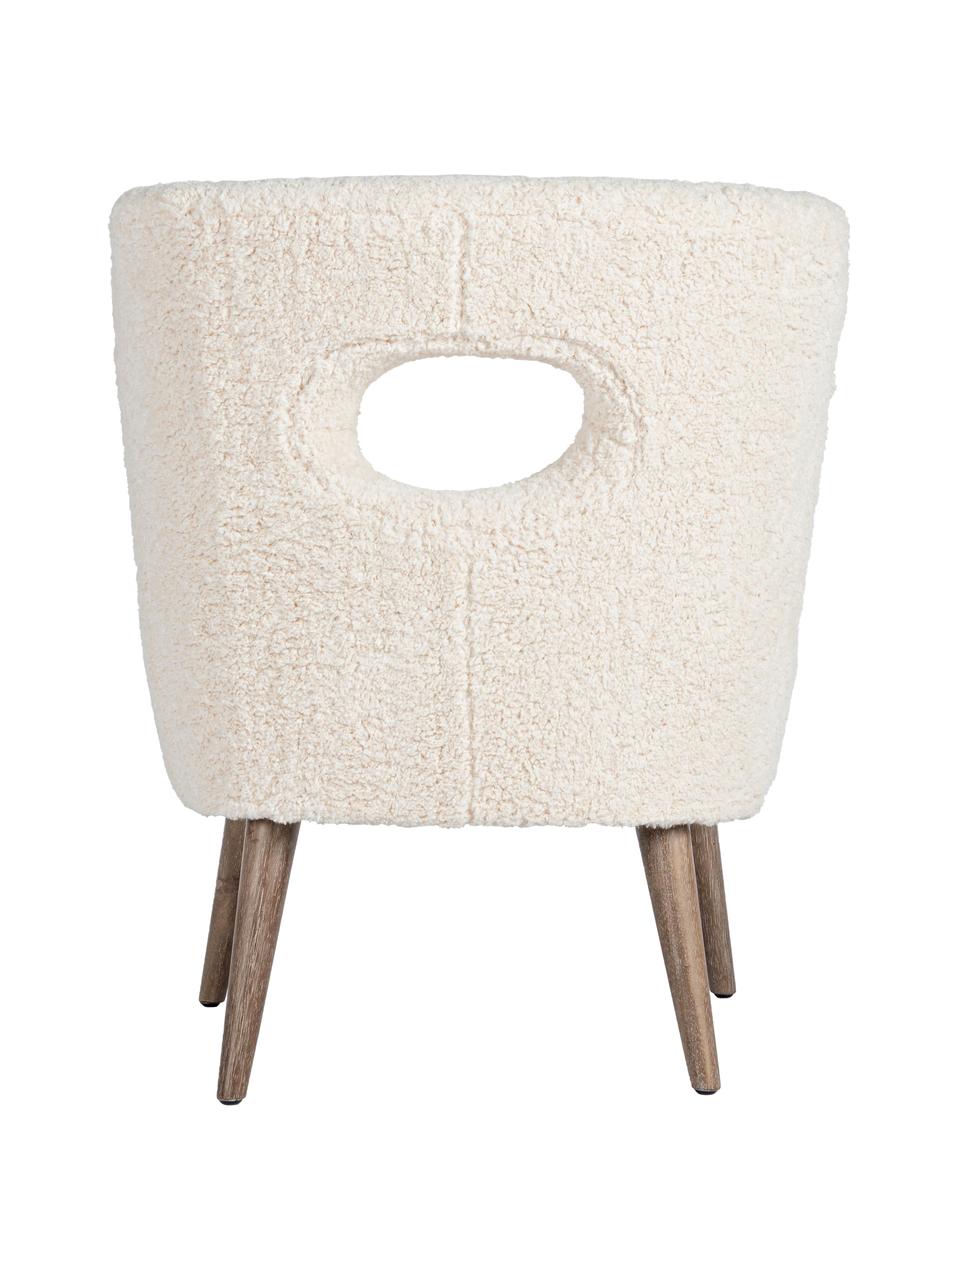 Teddy-Loungesessel Cortina, Sitzfläche: Polyester, Gestell: Tannenholz, Beine: Gummibaumholz, Cremefarben, B 65 x T 68 cm